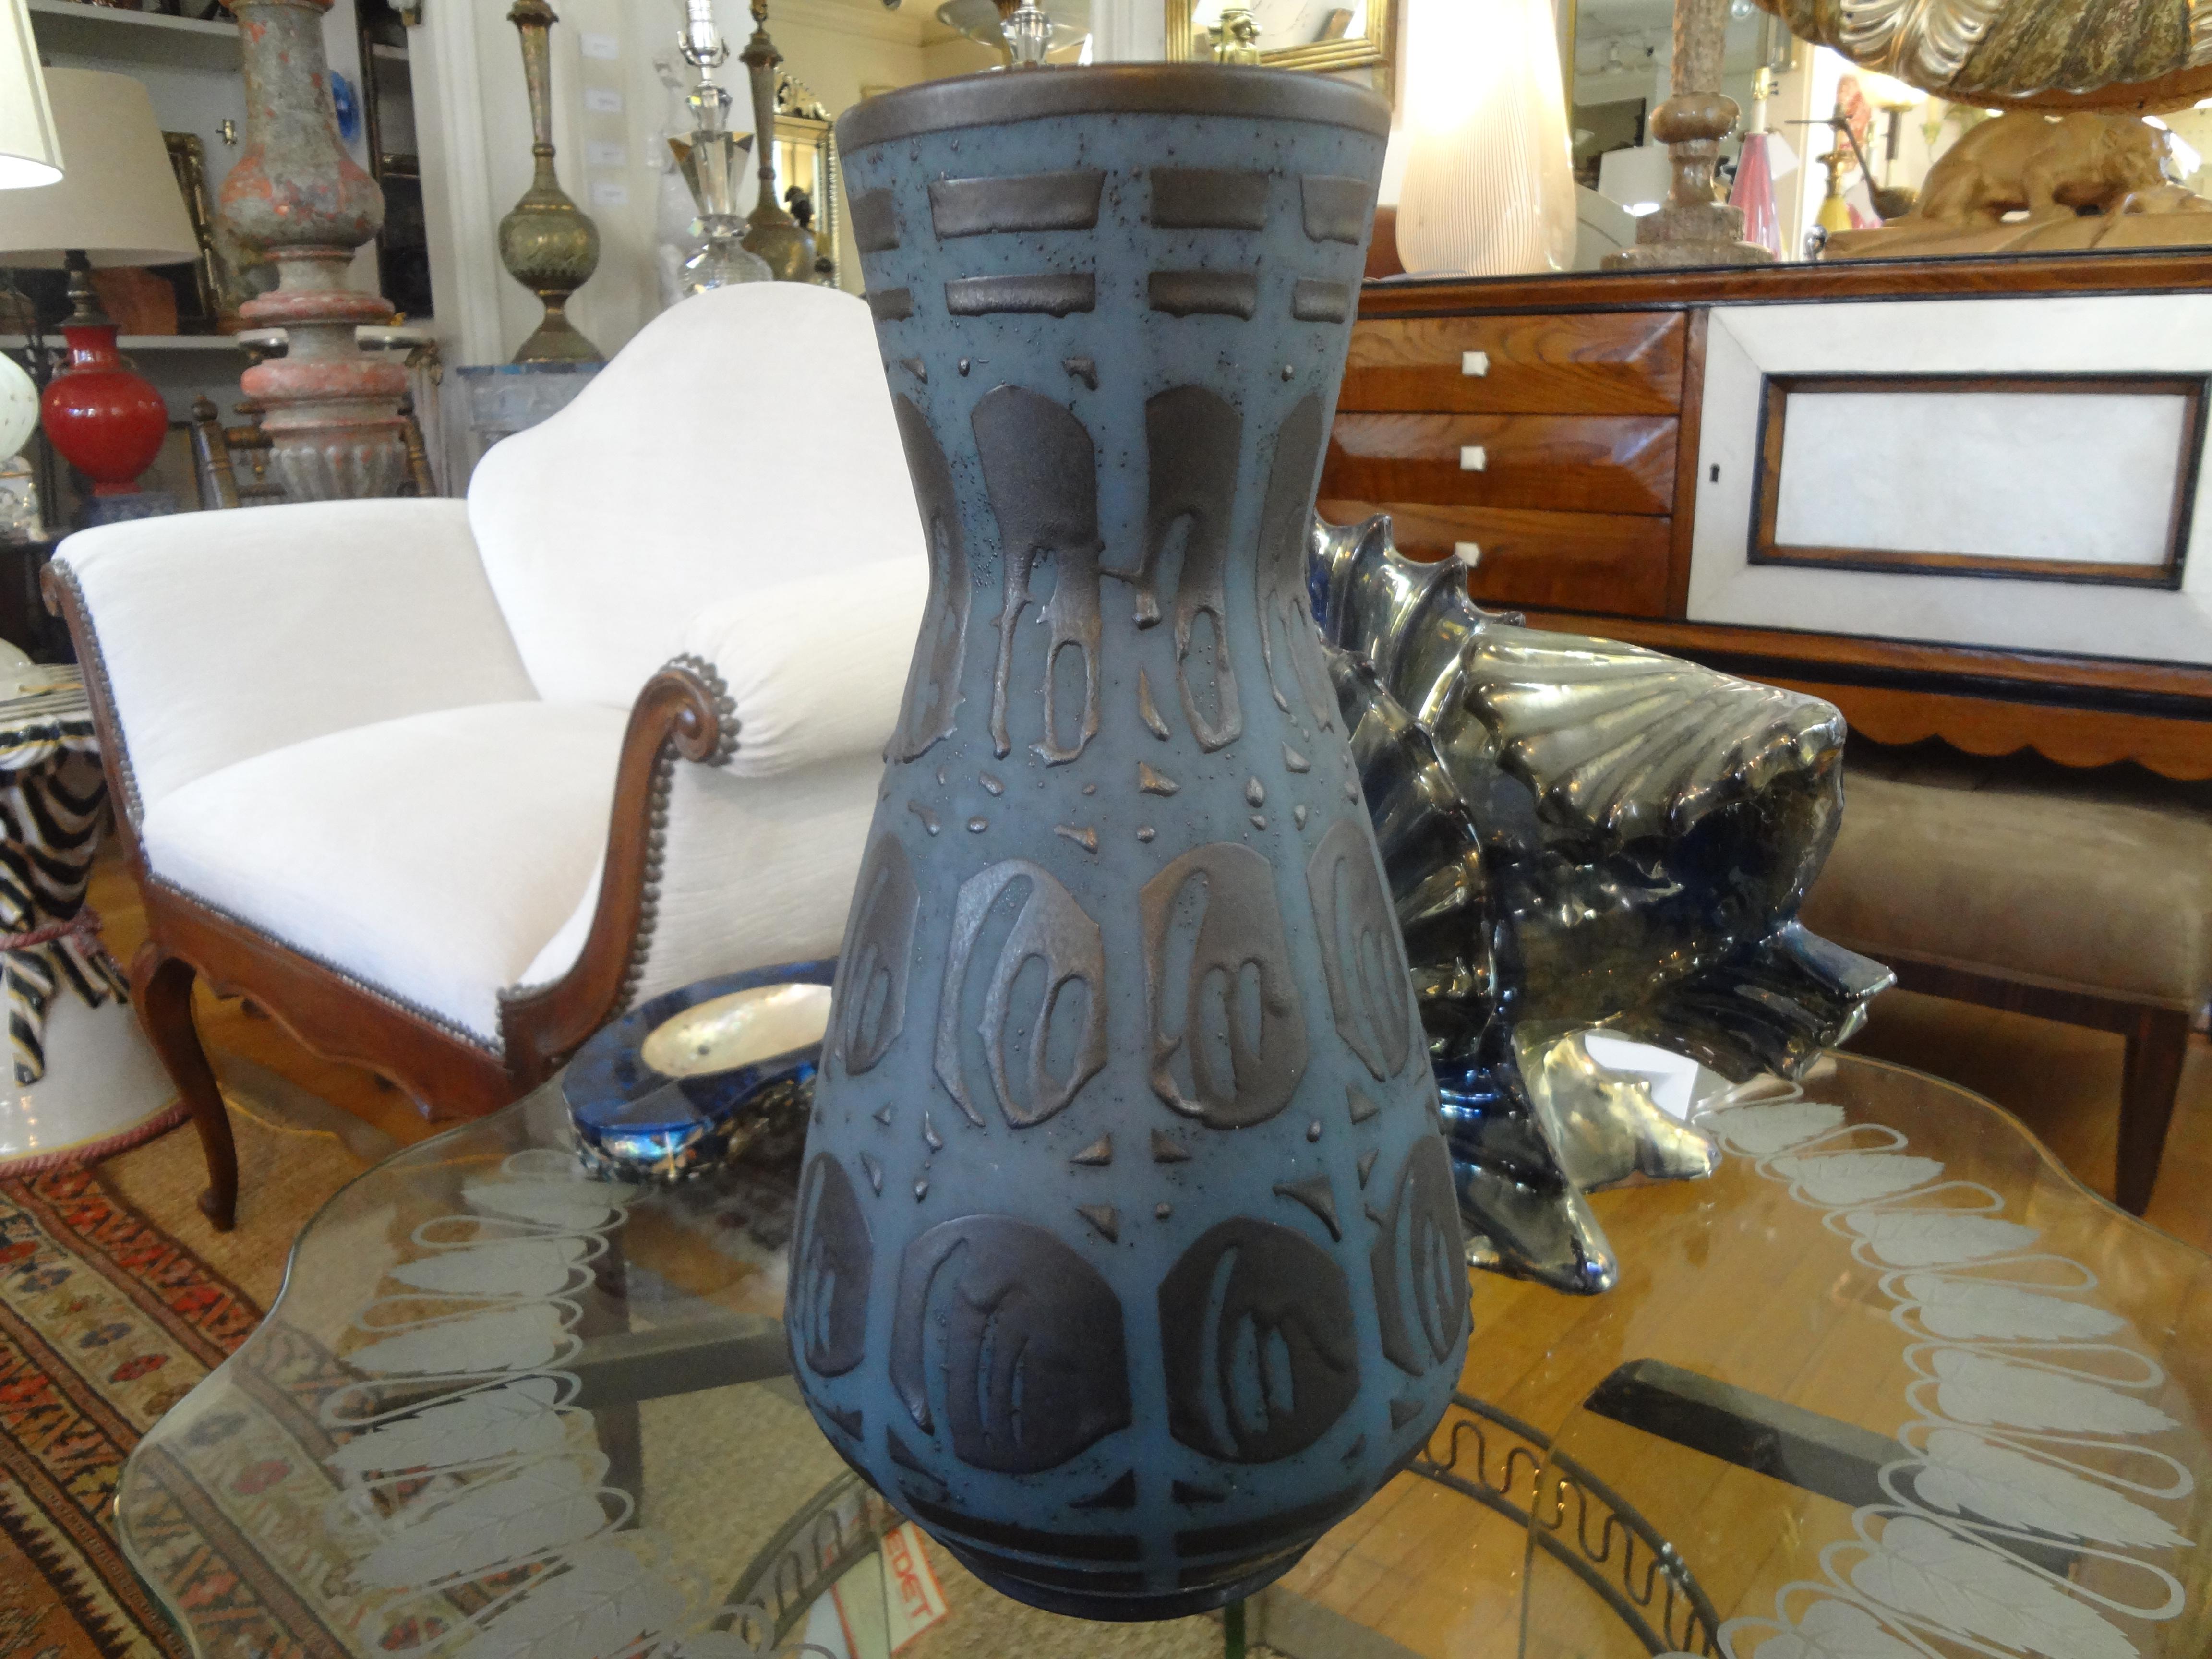 Wunderschöne große Vase aus matt glasierter westdeutscher Keramik aus der Mitte des Jahrhunderts. Diese hübsche Vase hat ein sehr interessantes geometrisches Muster in Schwarz auf einem schönen Stahlblau. Nur eines aus unserer großen Collection!